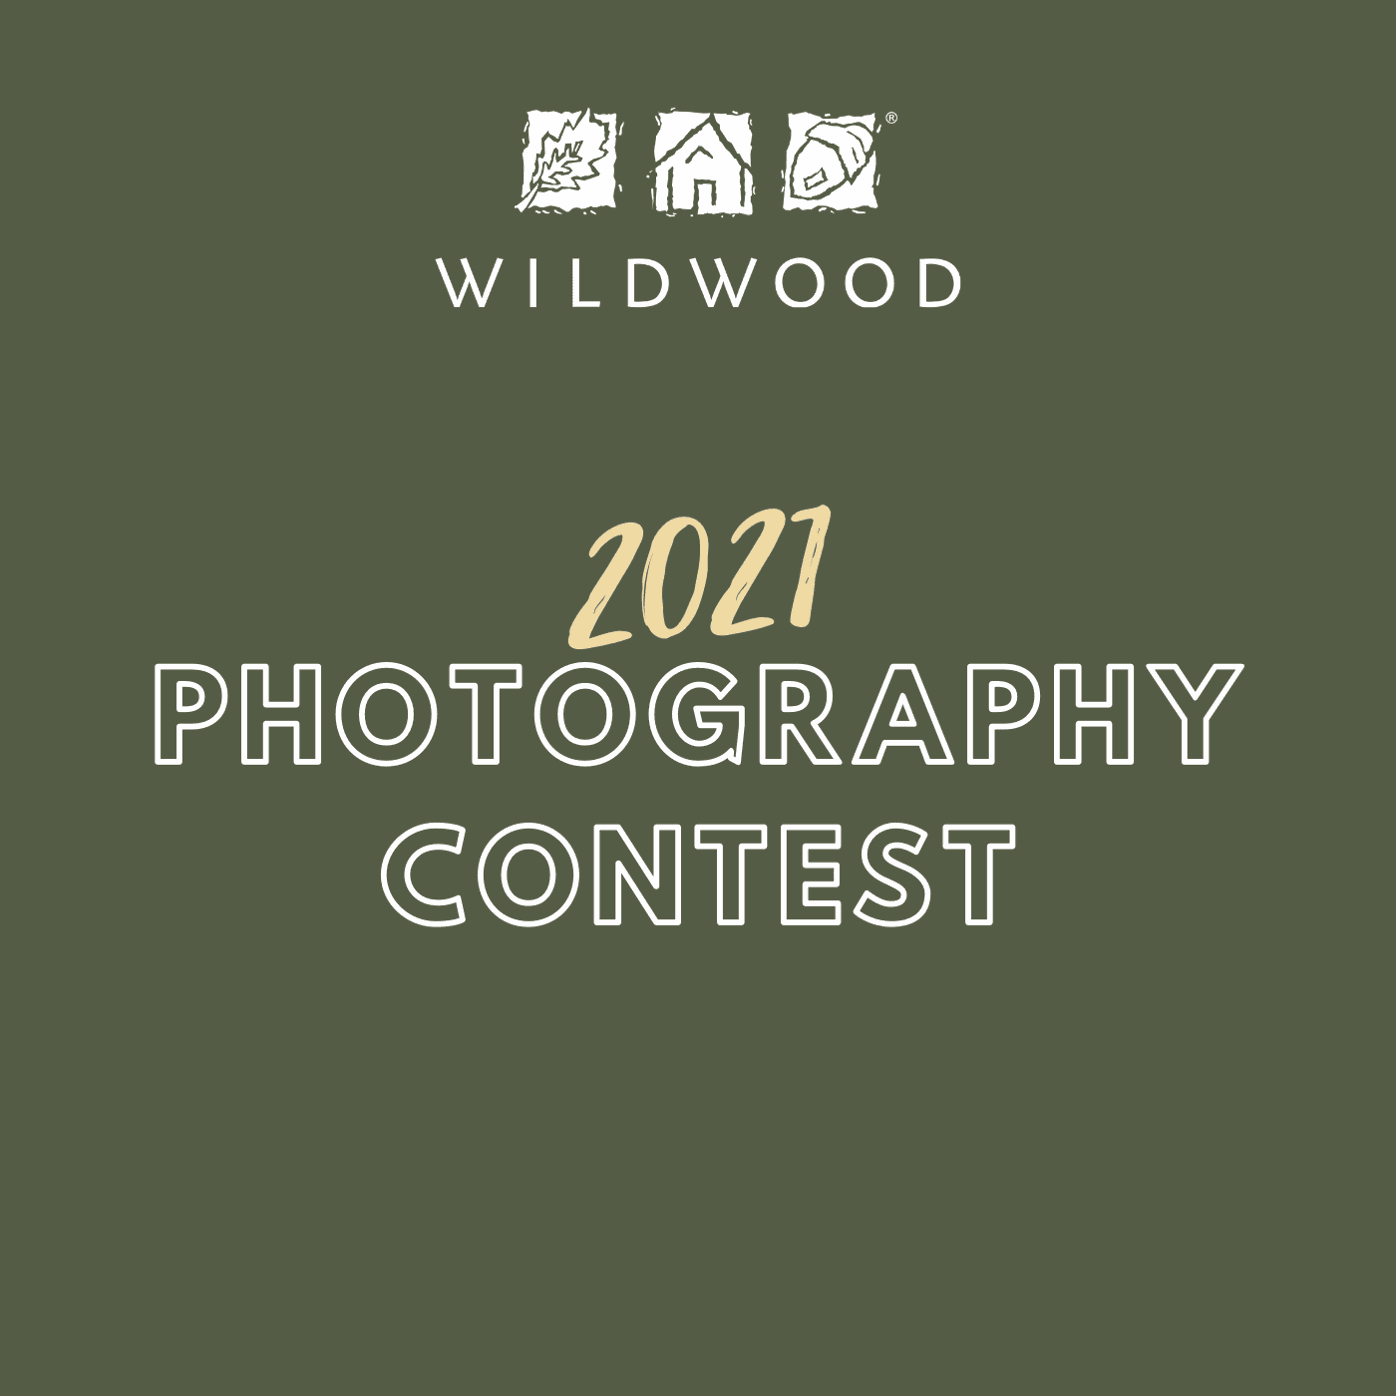 City of Wildwood Photo Contest